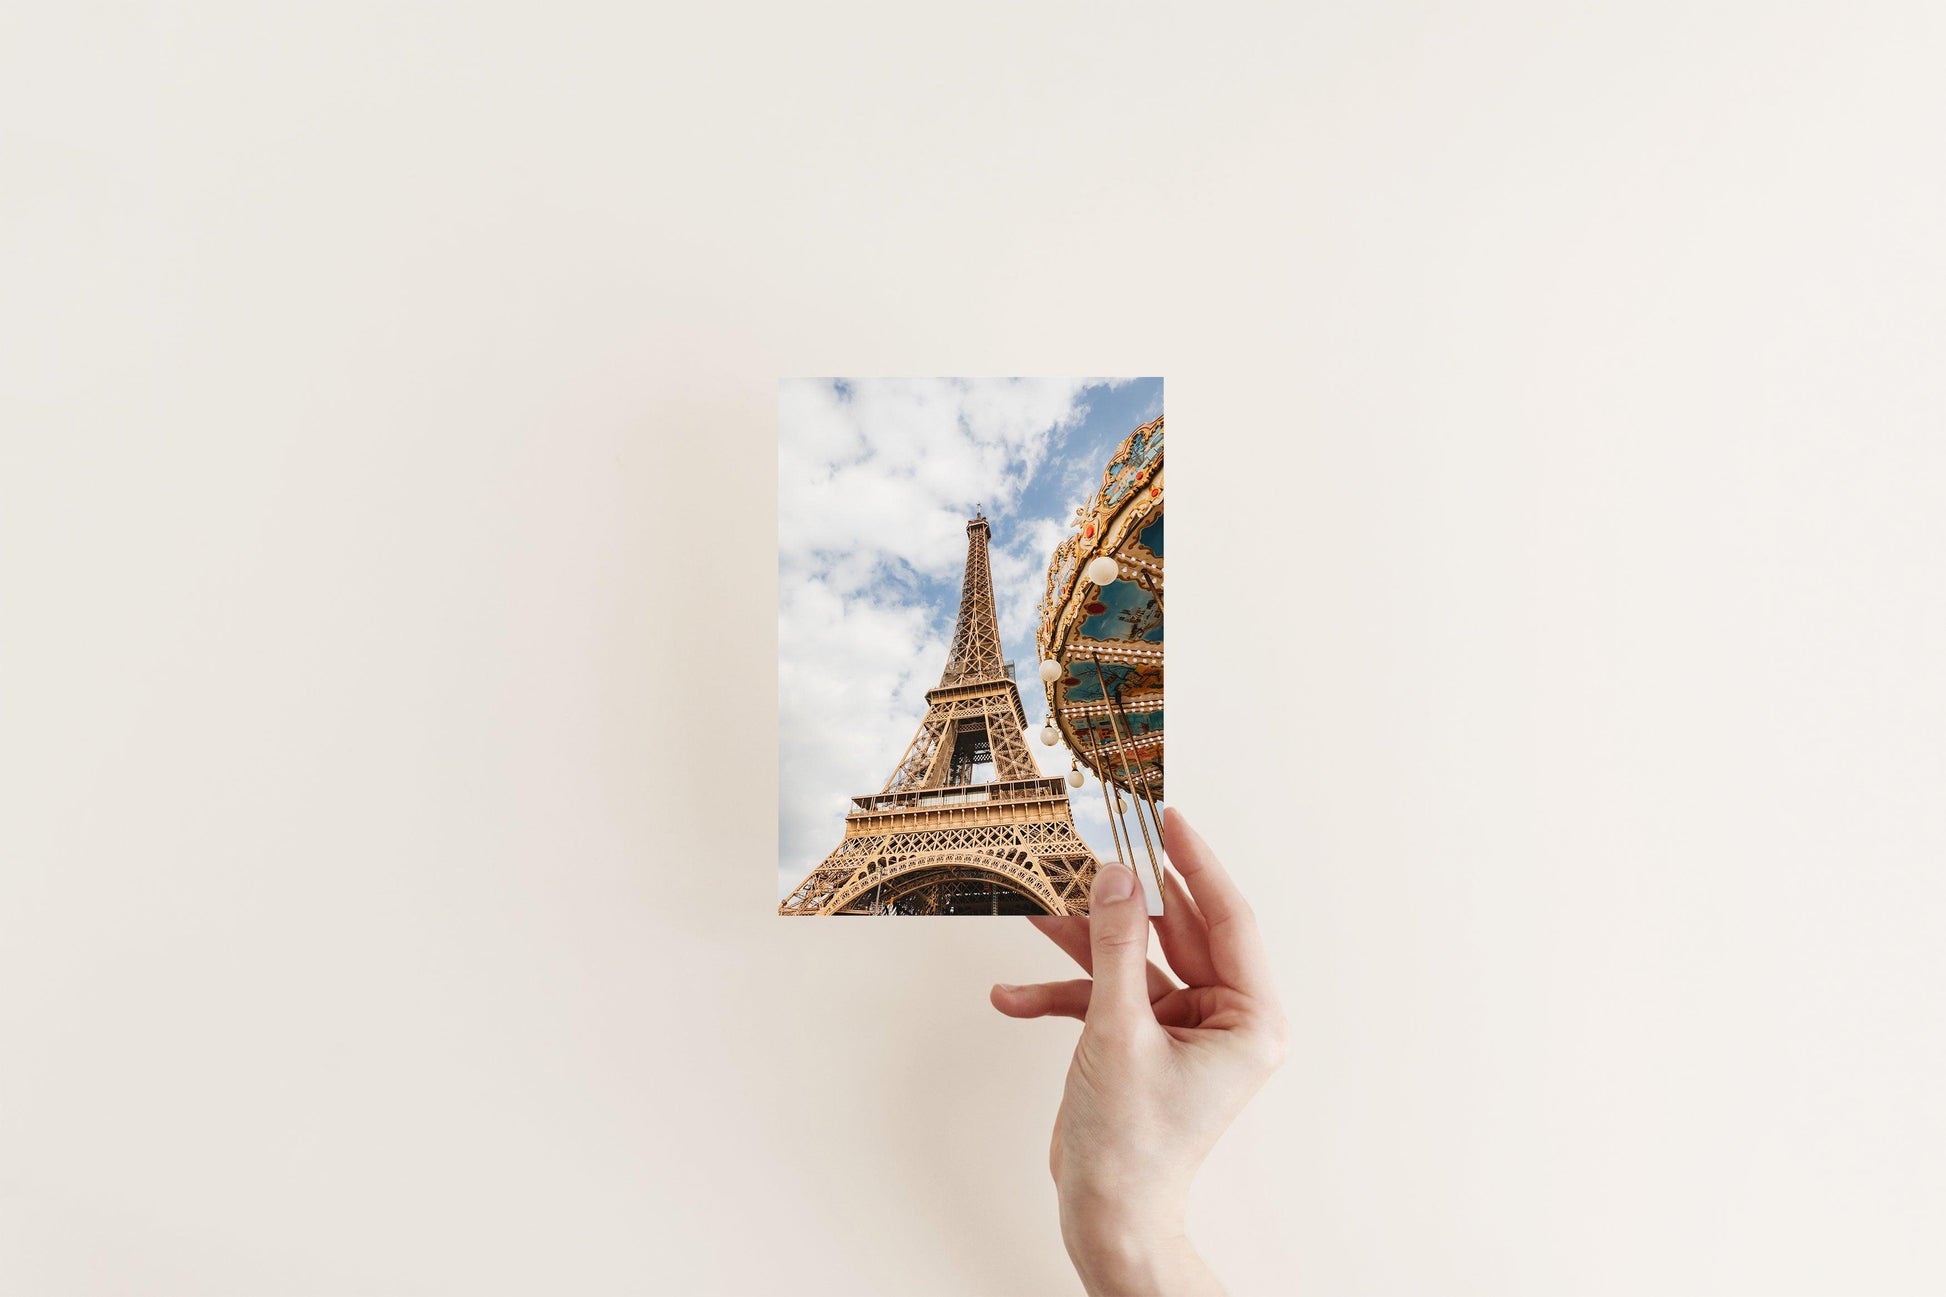 Eiffel Tower Carousel Paris Photography Print - Departures Print Shop